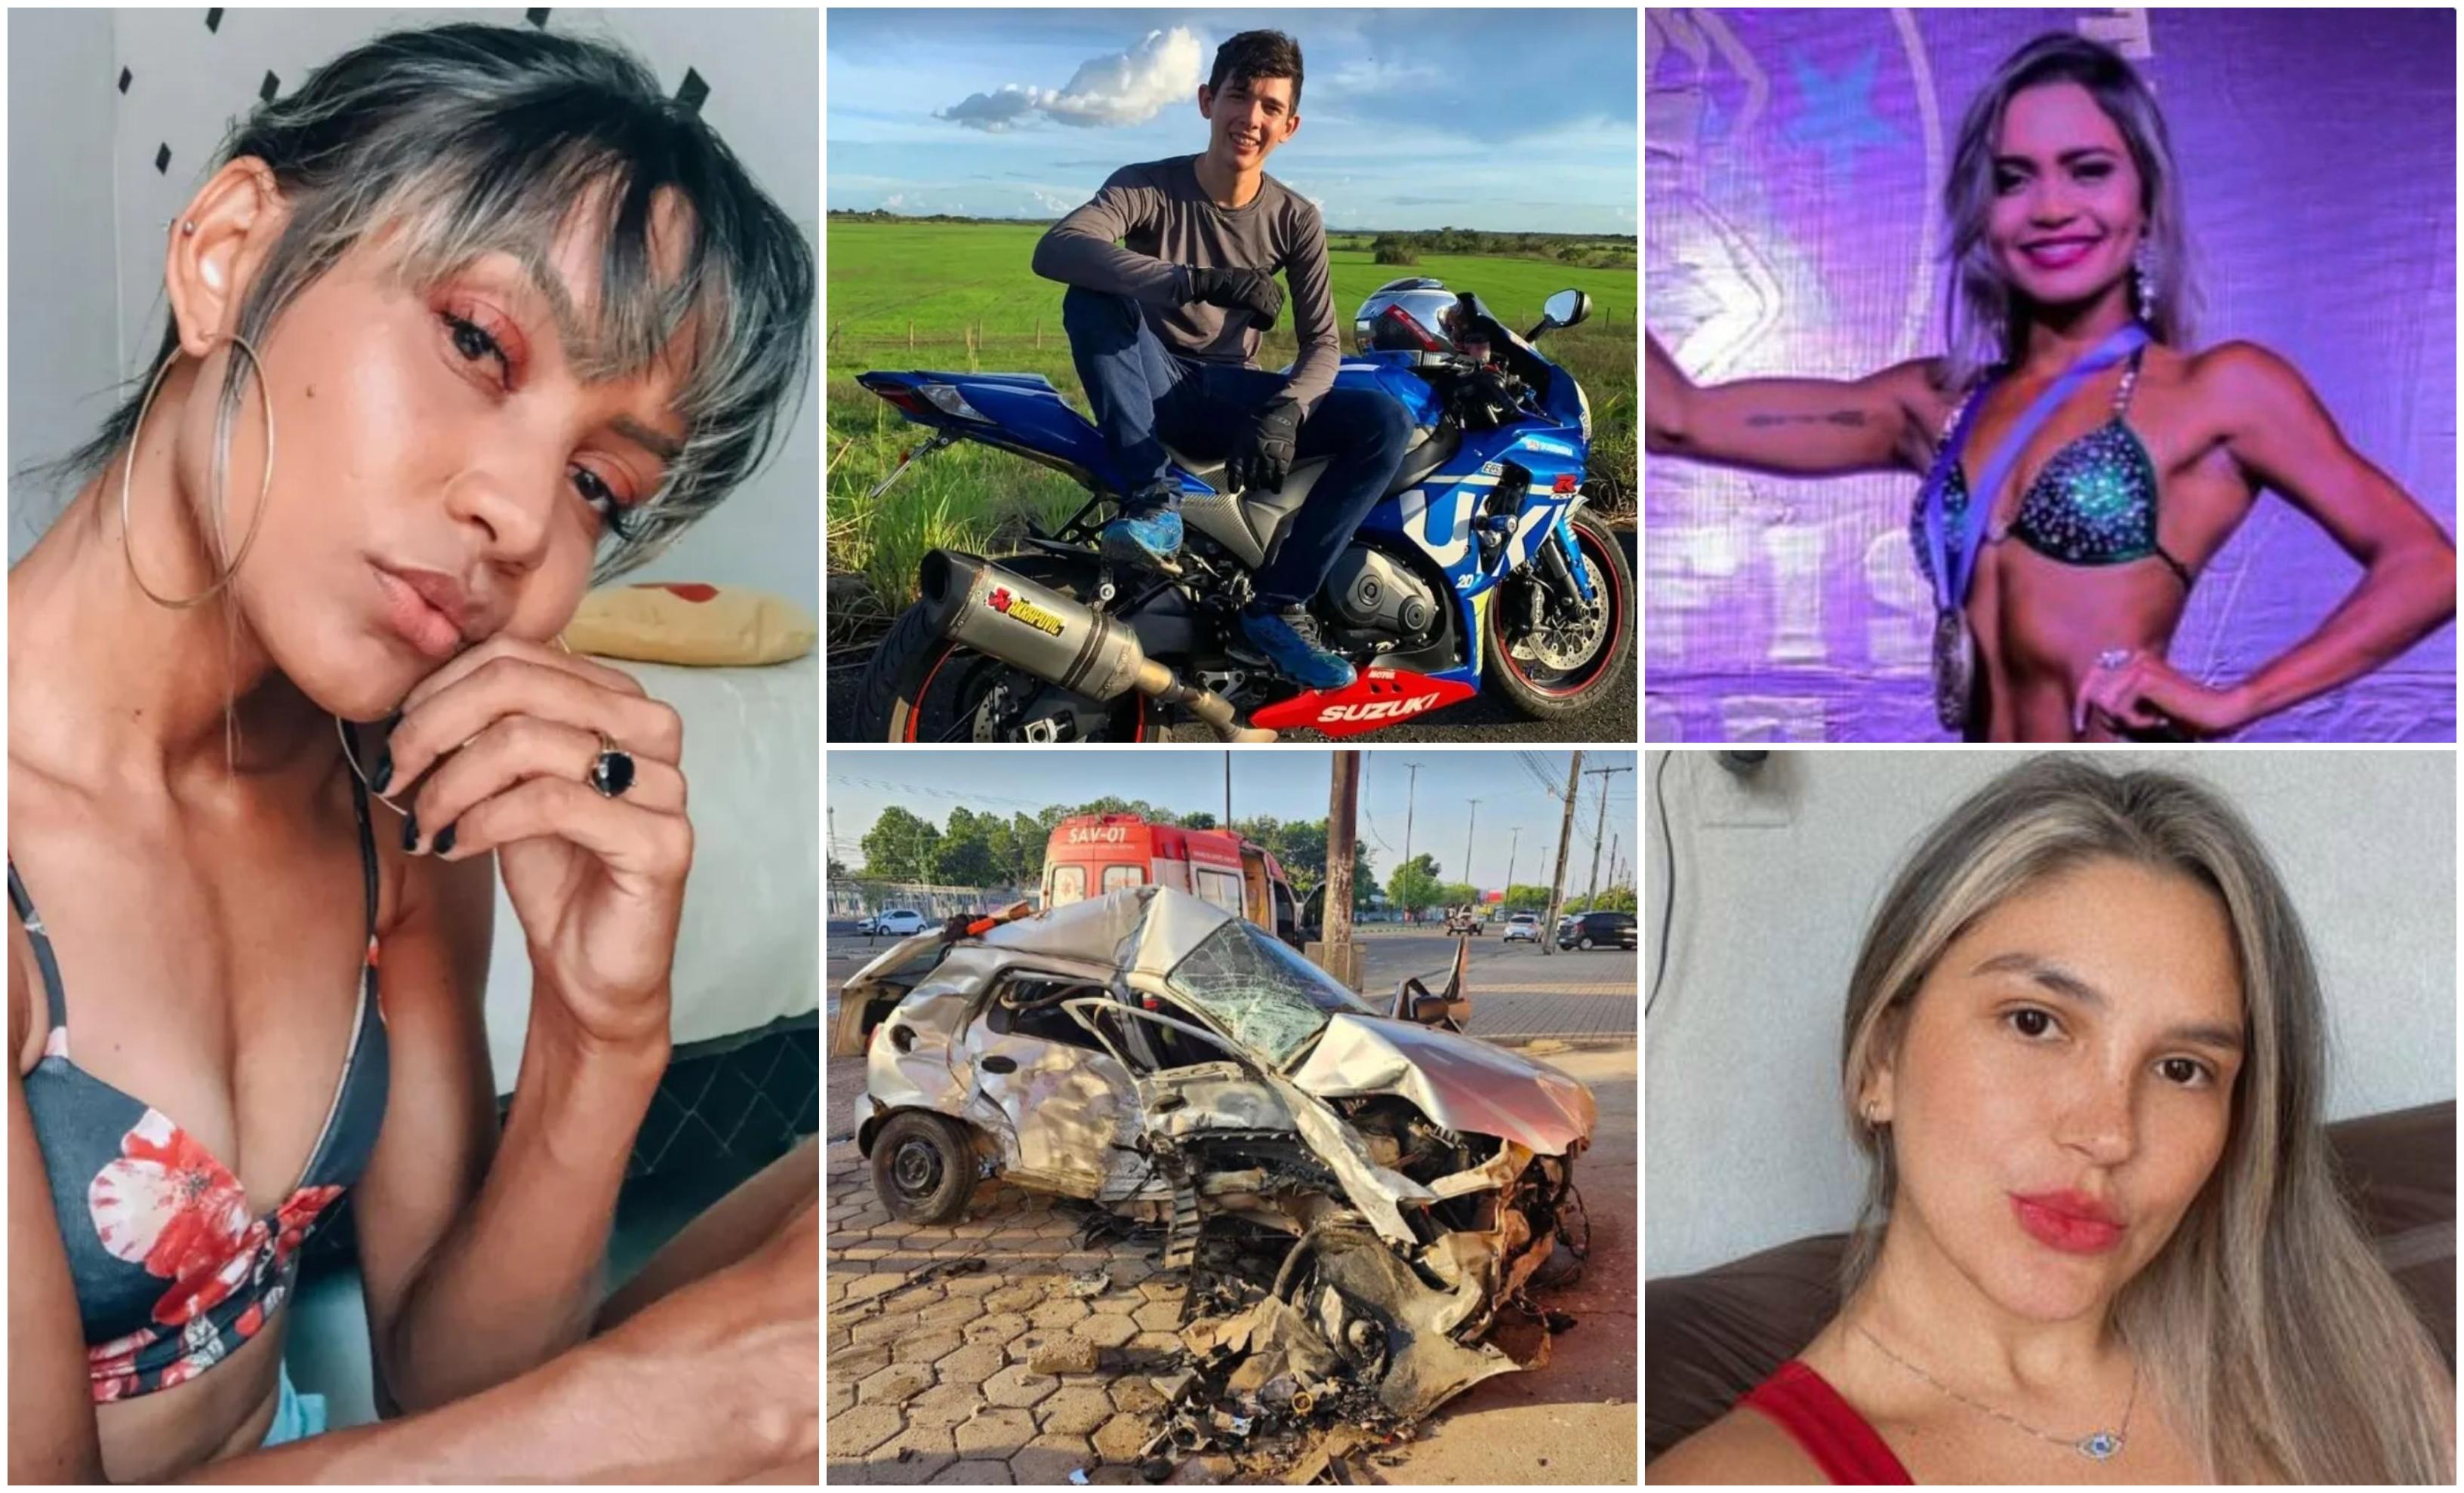 "Se antrena să câştige". Culturistă ucisă pe loc de un şofer băut, în Brazilia. Prietena ei din copilărie şi-a dat ultima suflare la spital: ambele lasă în urmă câte un copil